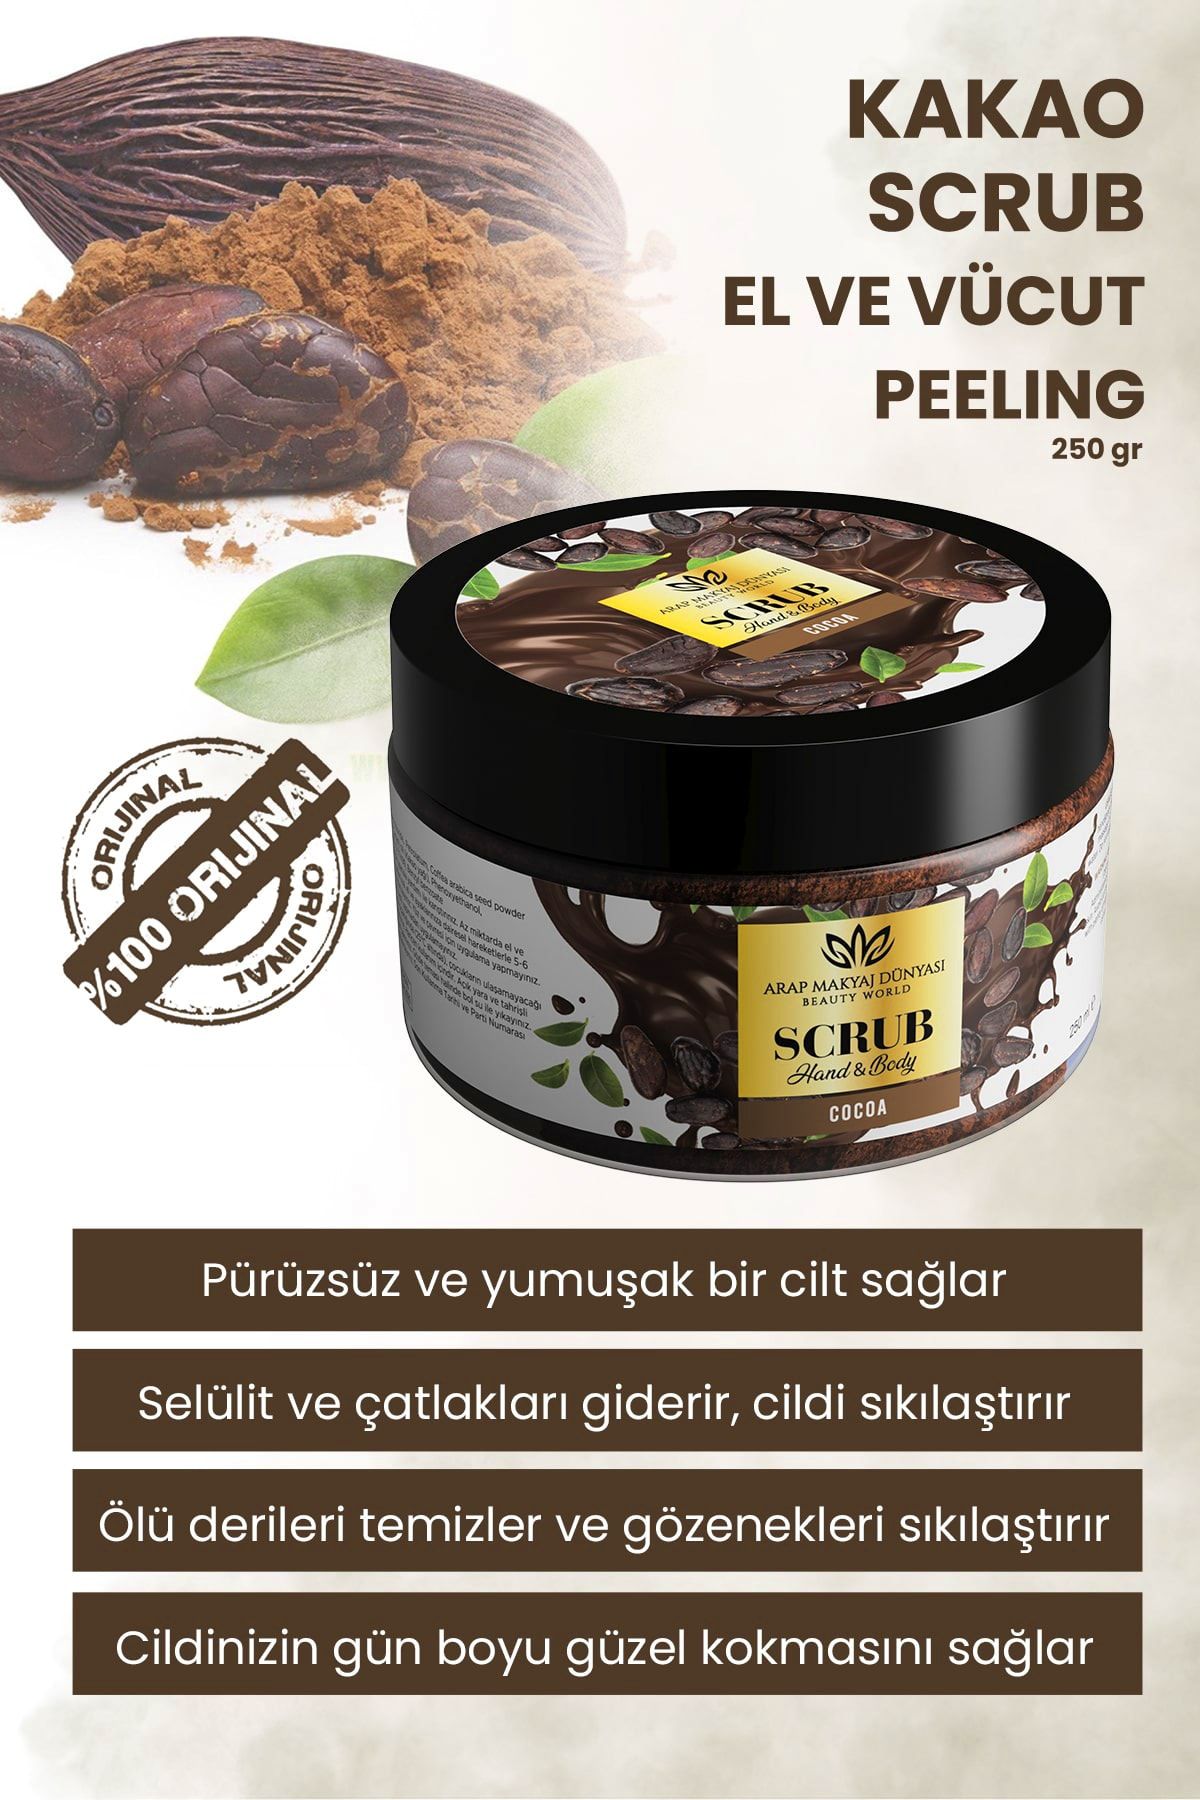 Arap Makyaj Dünyası Cocoa Scrub - Kakao El & Vücut Peeling 250gr